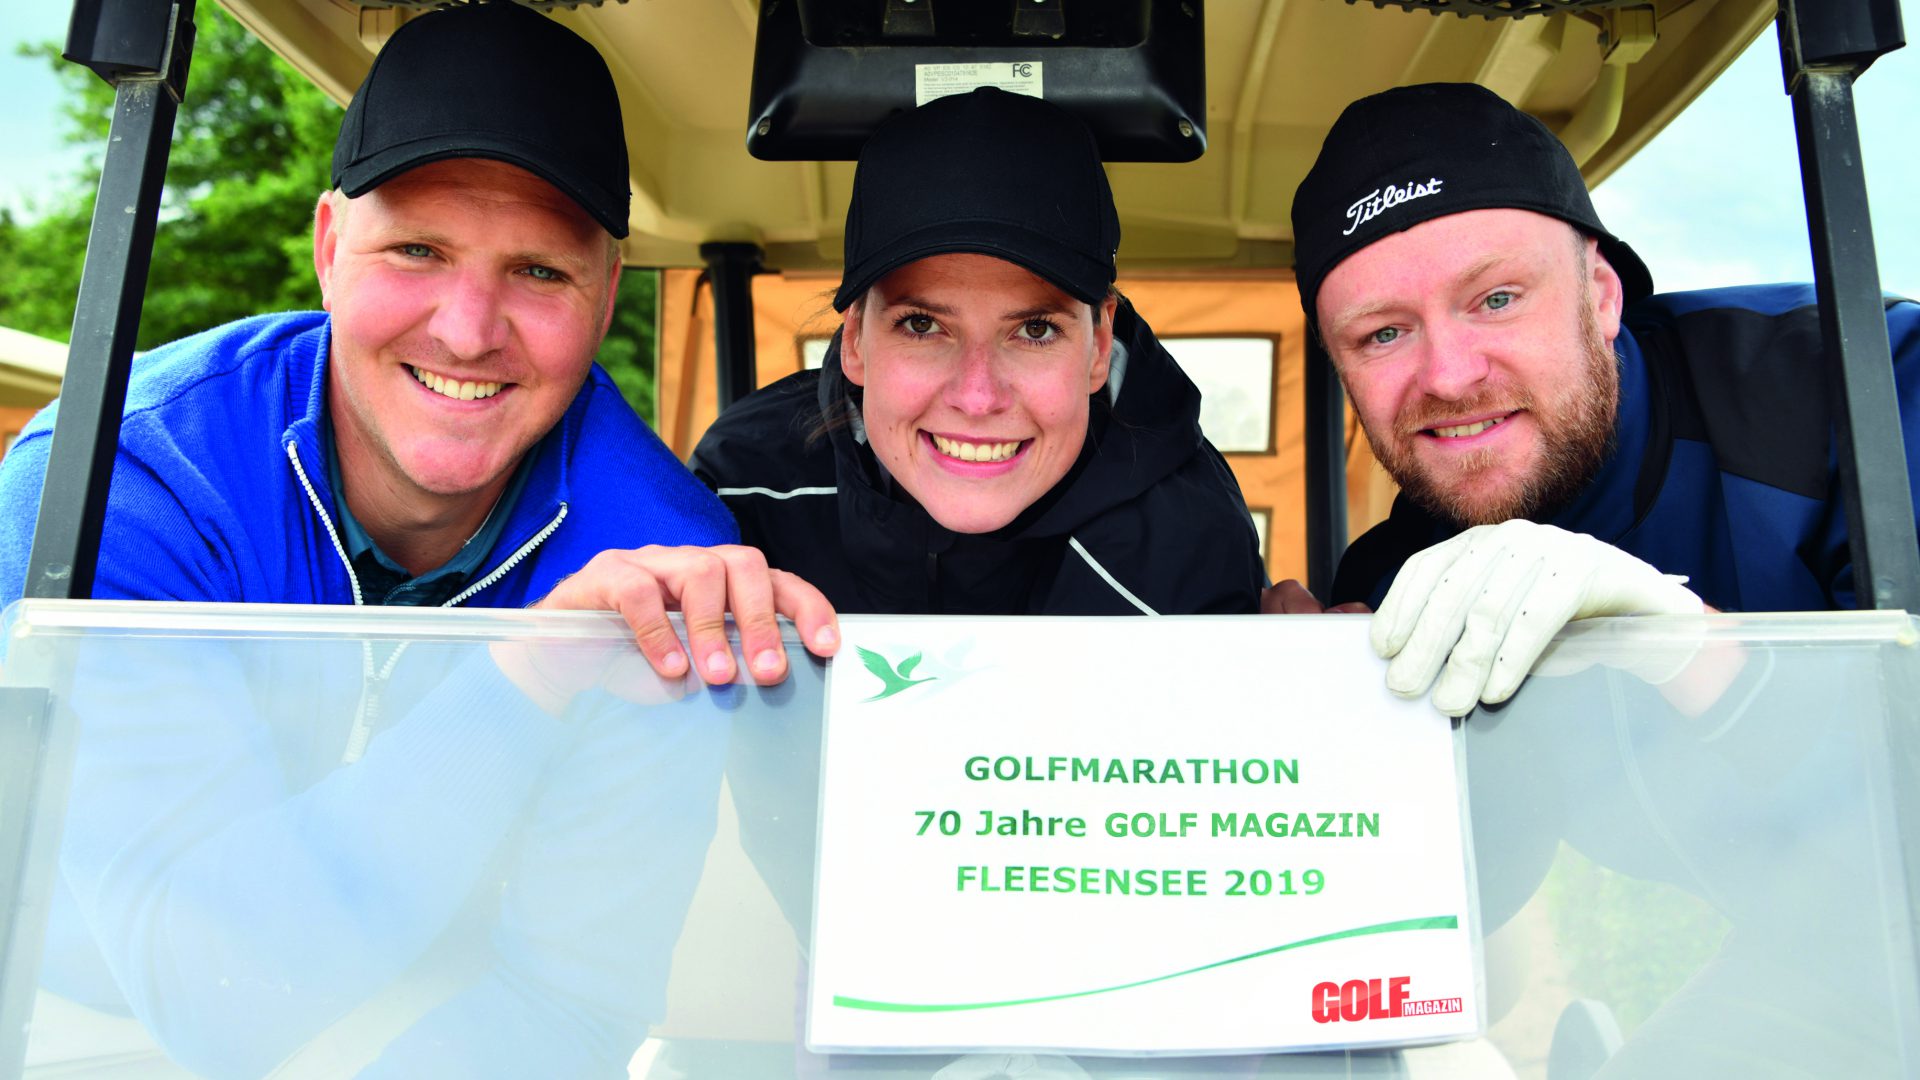 Golf-Marathon – 70 Jahre GOLF MAGAZIN.Arne Schumann, Monique Krause und Toni Dittmann (von links) haben gerade erst mit Golf angefangen. Sie waren Feuer und Flamme und haben die 70 Bahnen durchgehalten. (Foto: Elke A. Jung-Wolff)